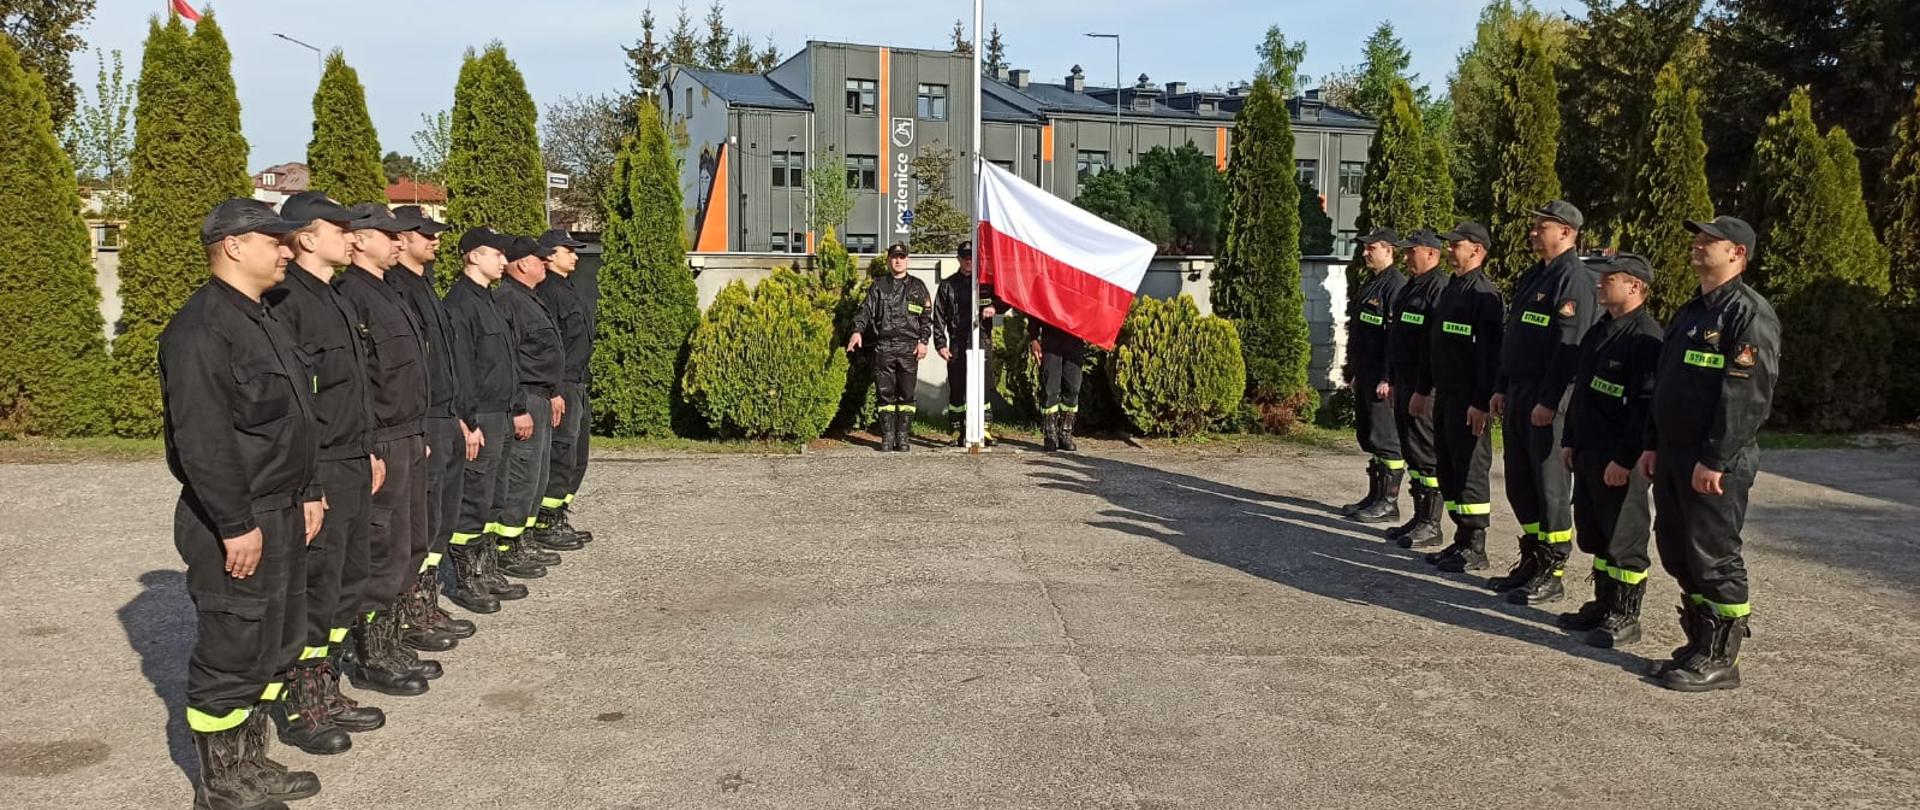 strażacy podczas uroczystej zmiany służbowej w Dzień Flagi Rzeczypospolitej Polskiej stoją na placu komendy , na masz wciągana flaga państwowa